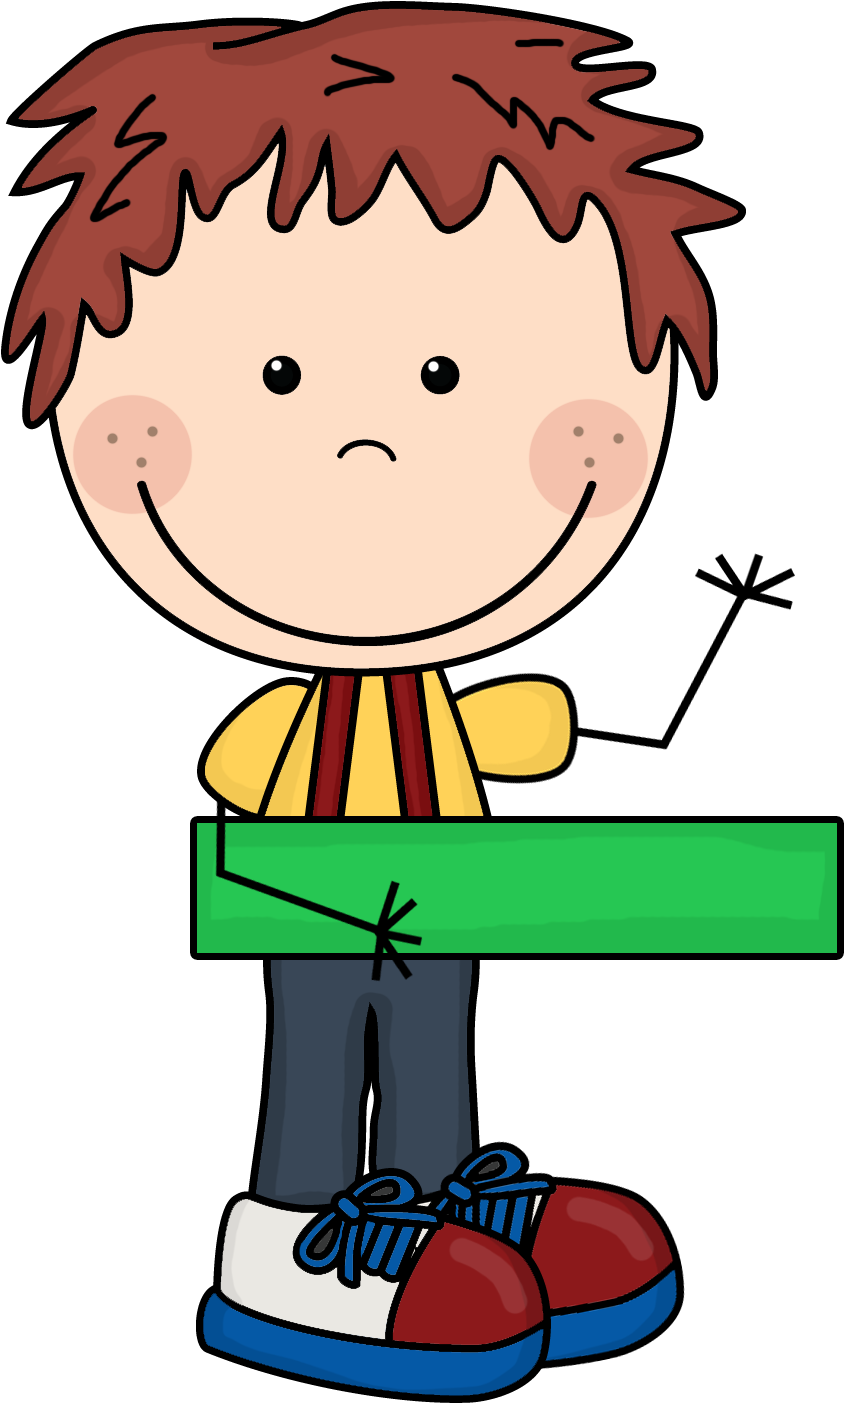 A Cartoon Of A Boy Holding A Green Rectangular Object